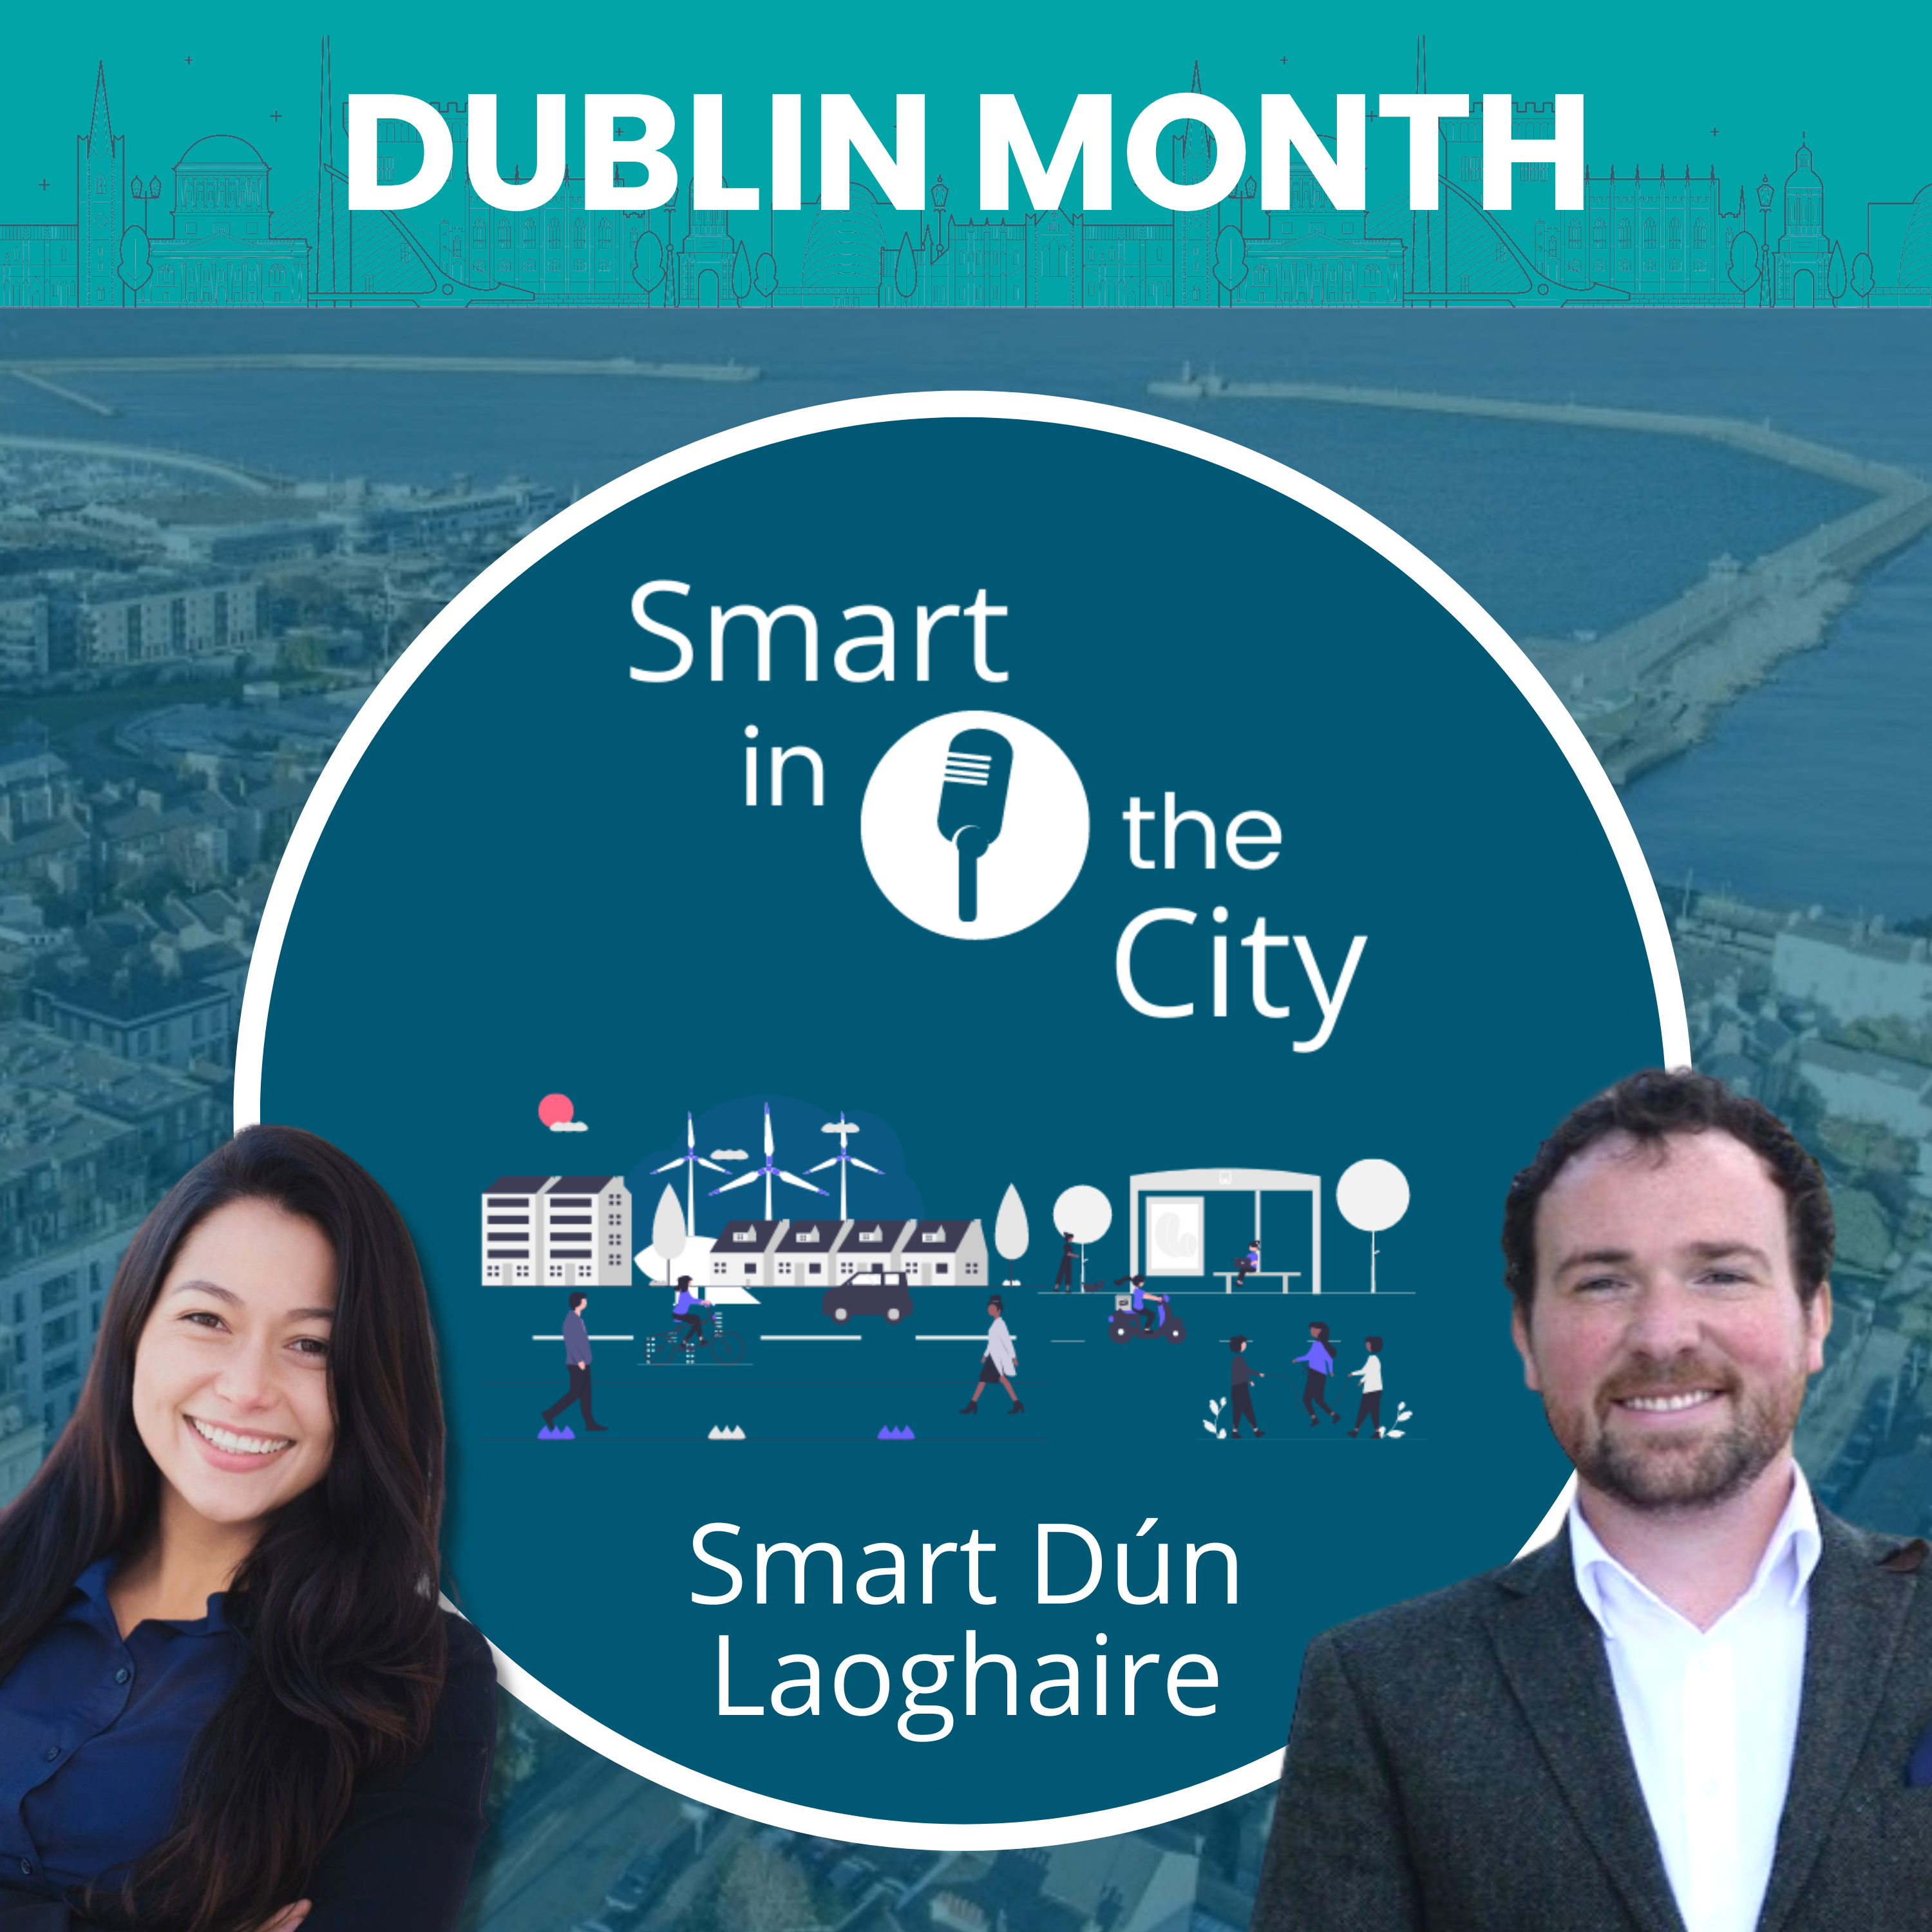 Dublin Month #3 - Smart Dún Laoghaire: 